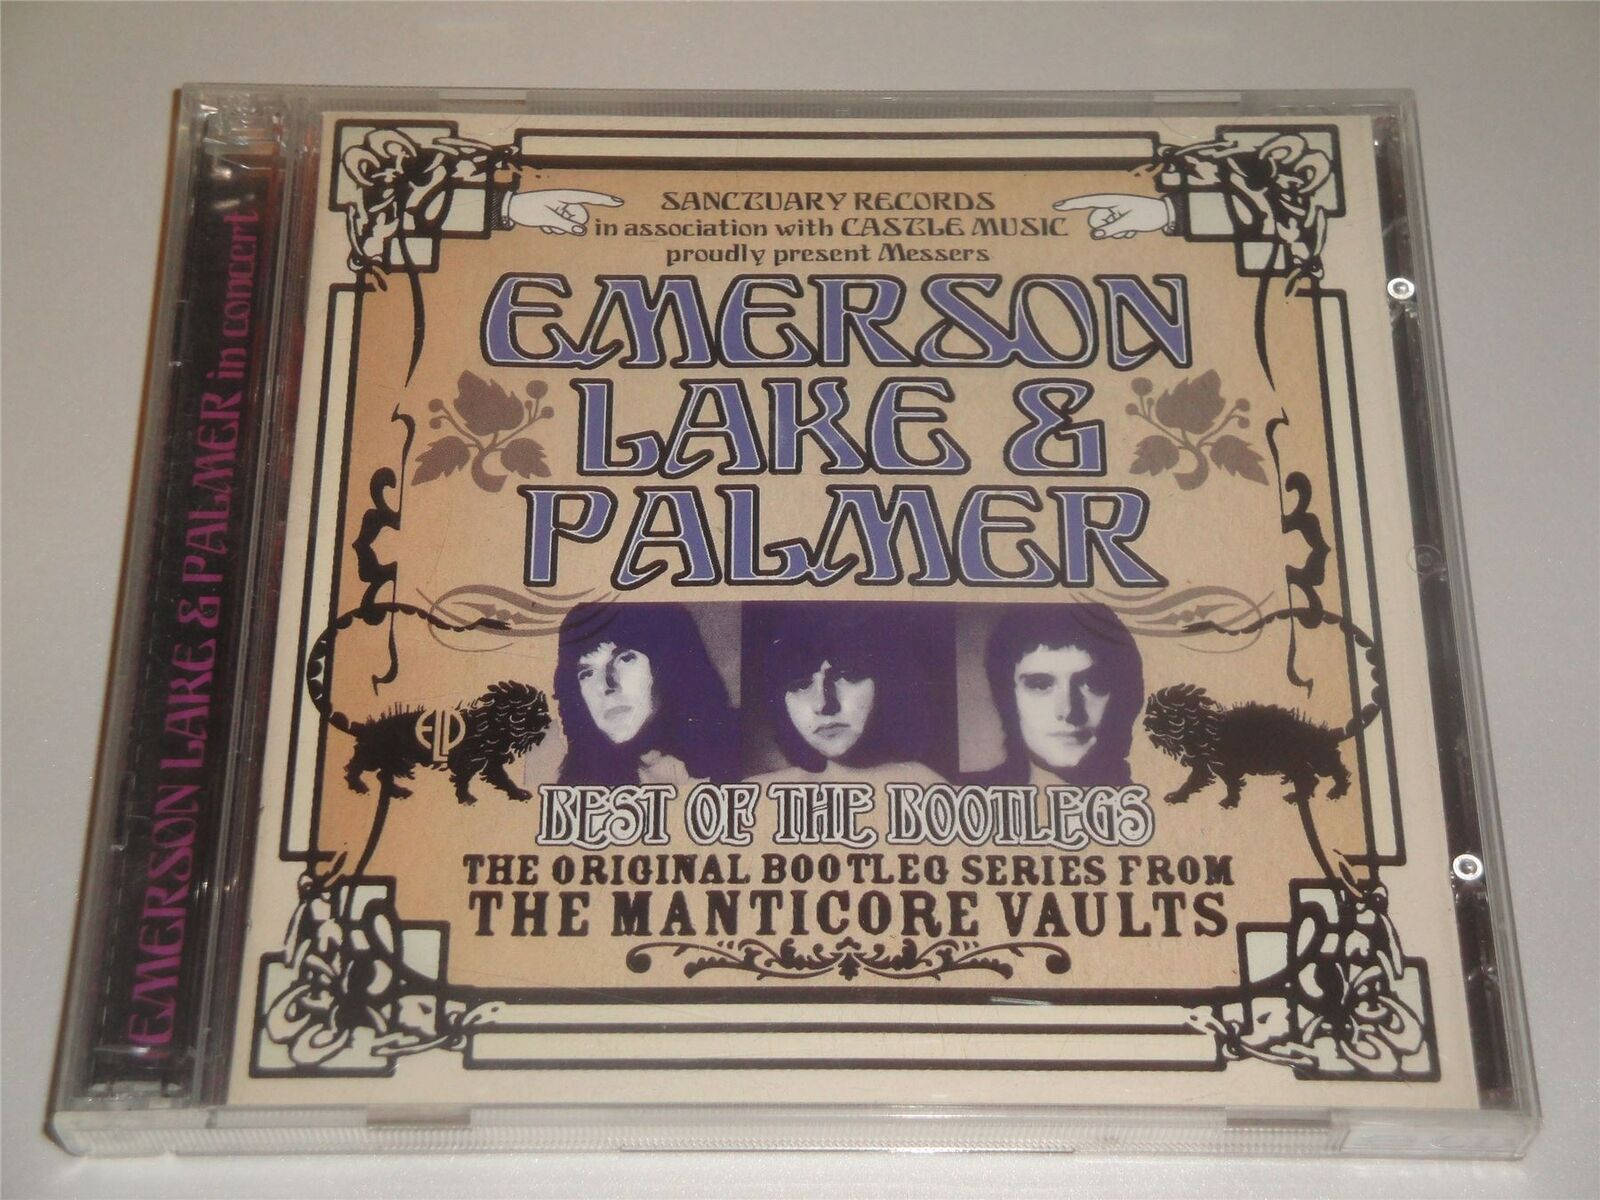 Emerson Lake & Palmer CD Bedste af Bootlegs. Wallpaper